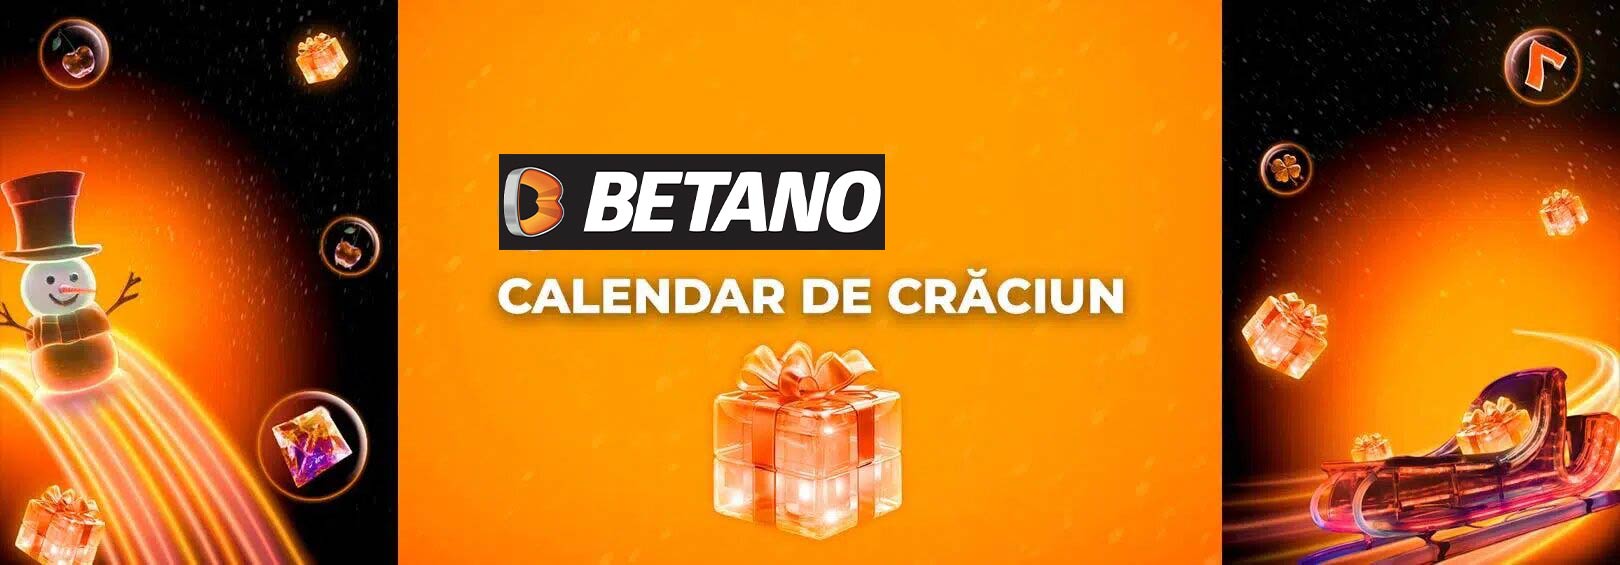 Calendar Crăciun Betano